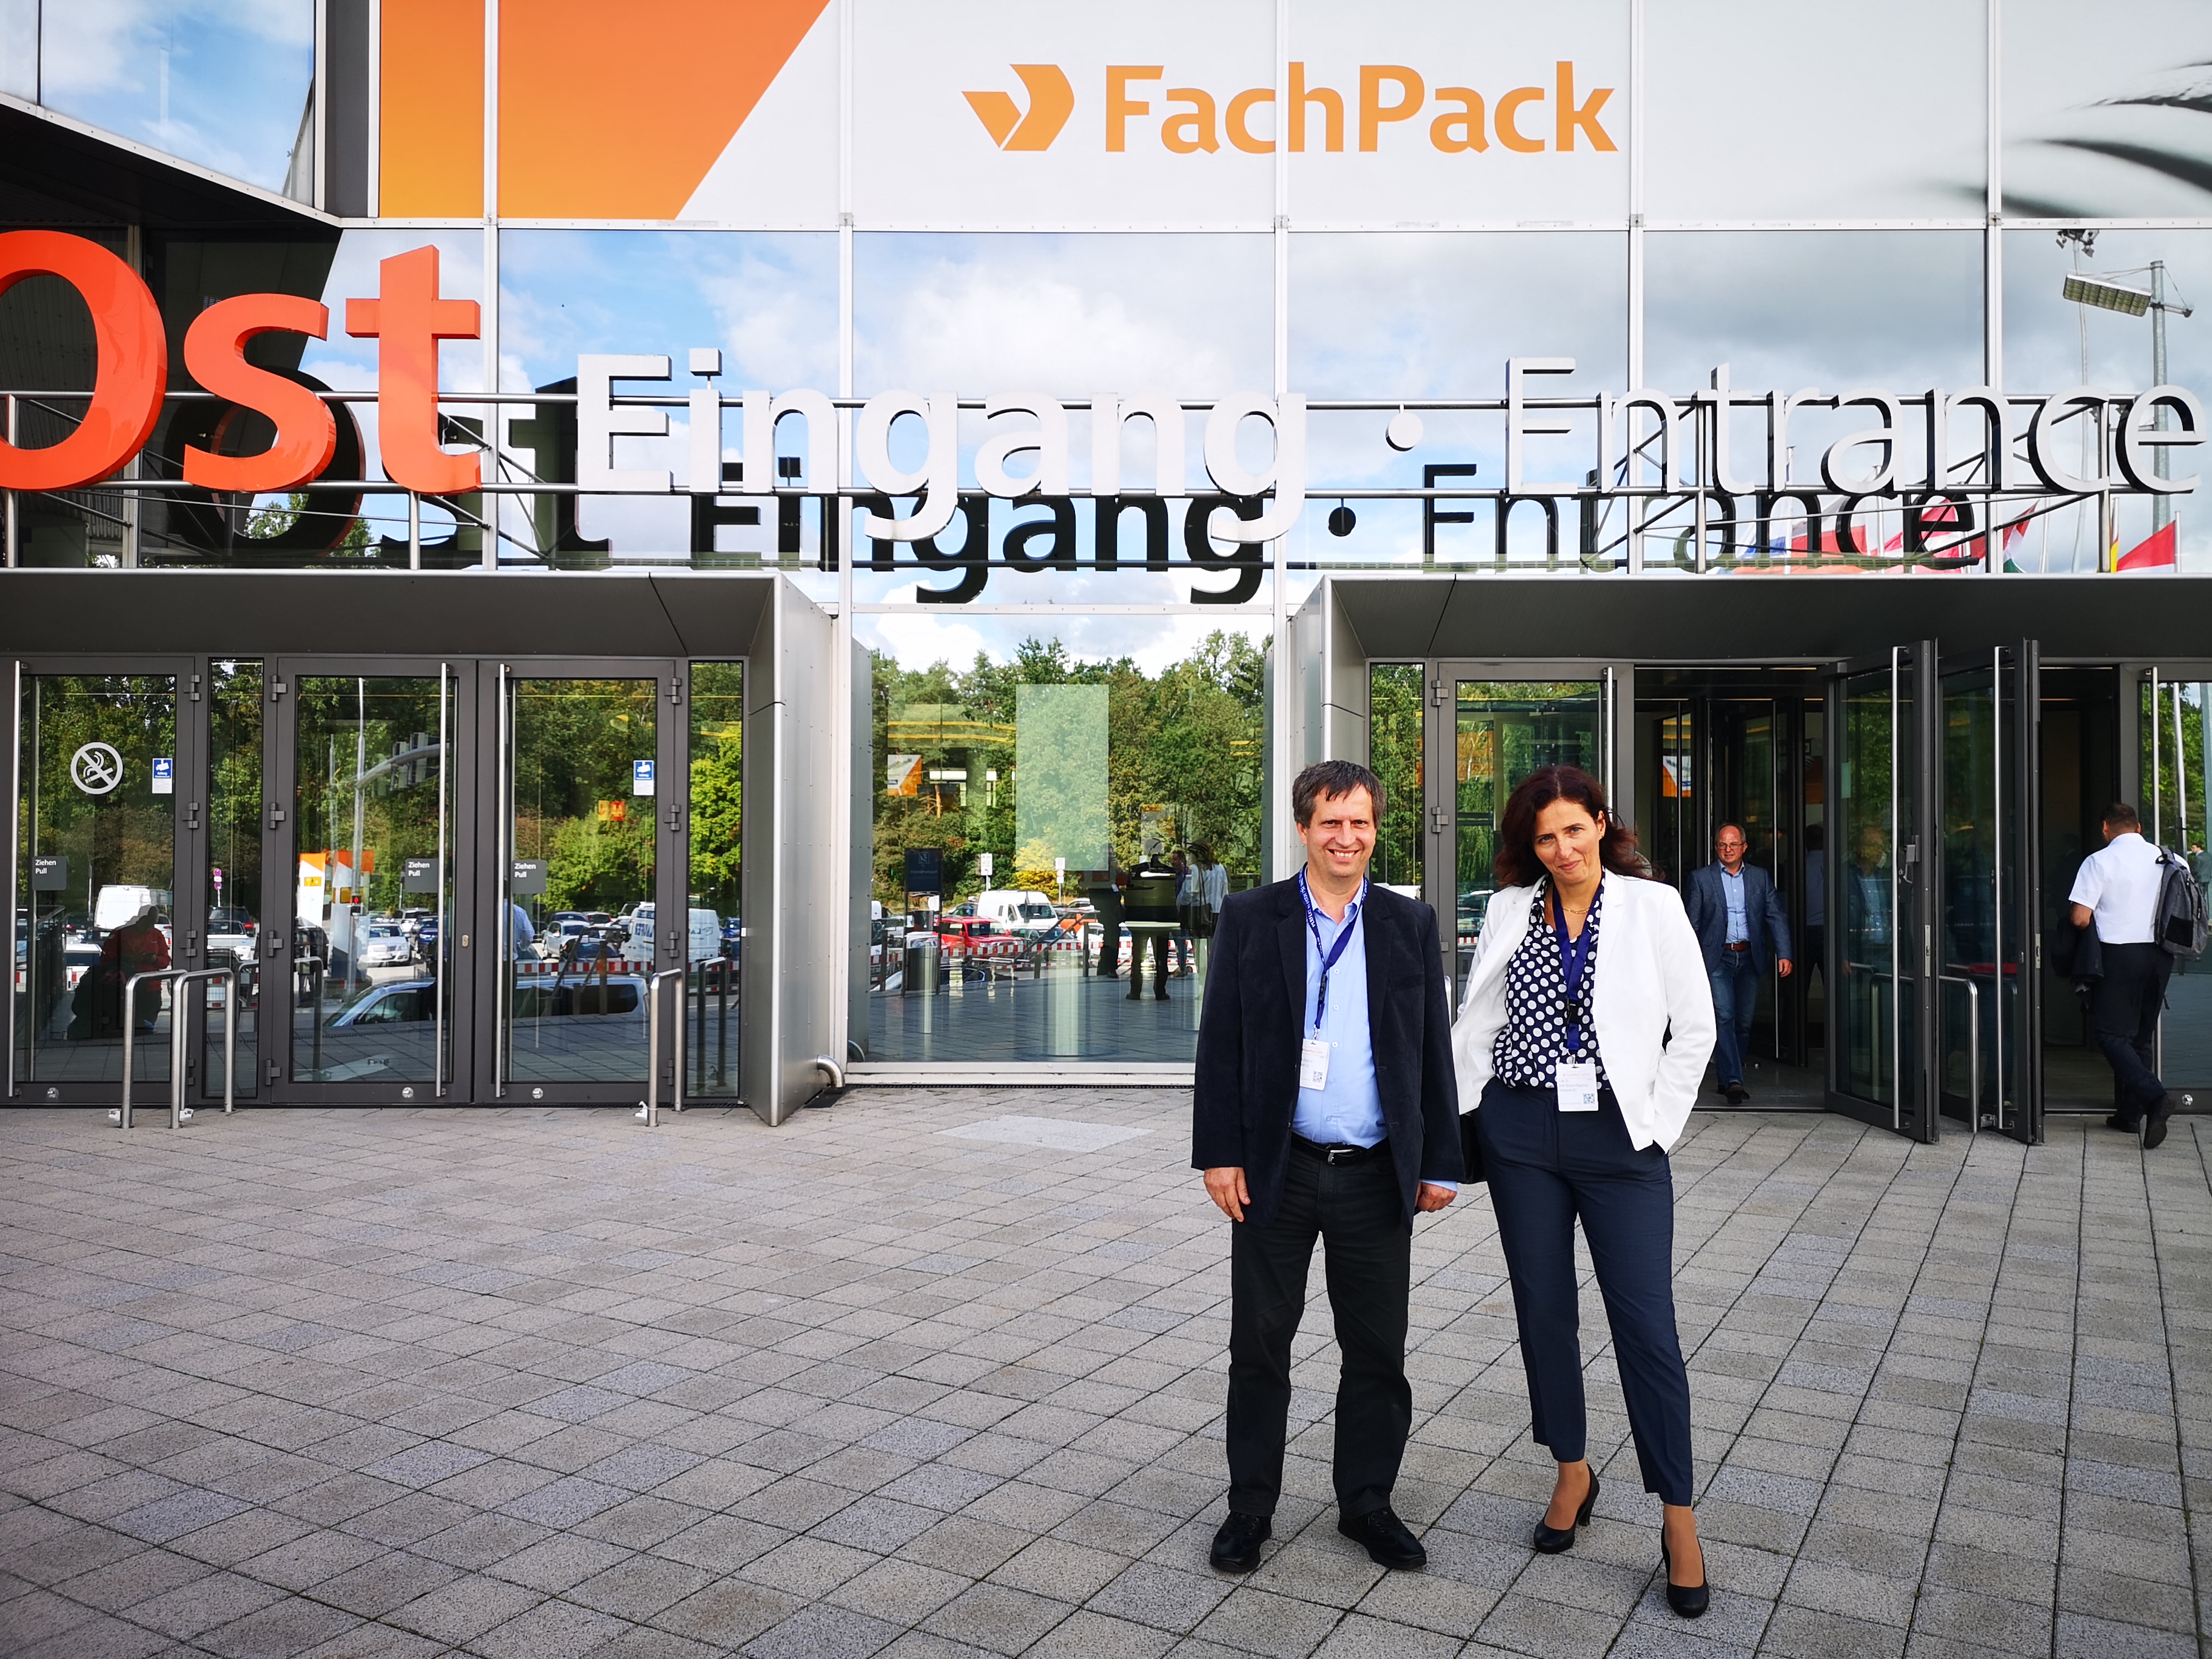 FachPack trade fair 2019